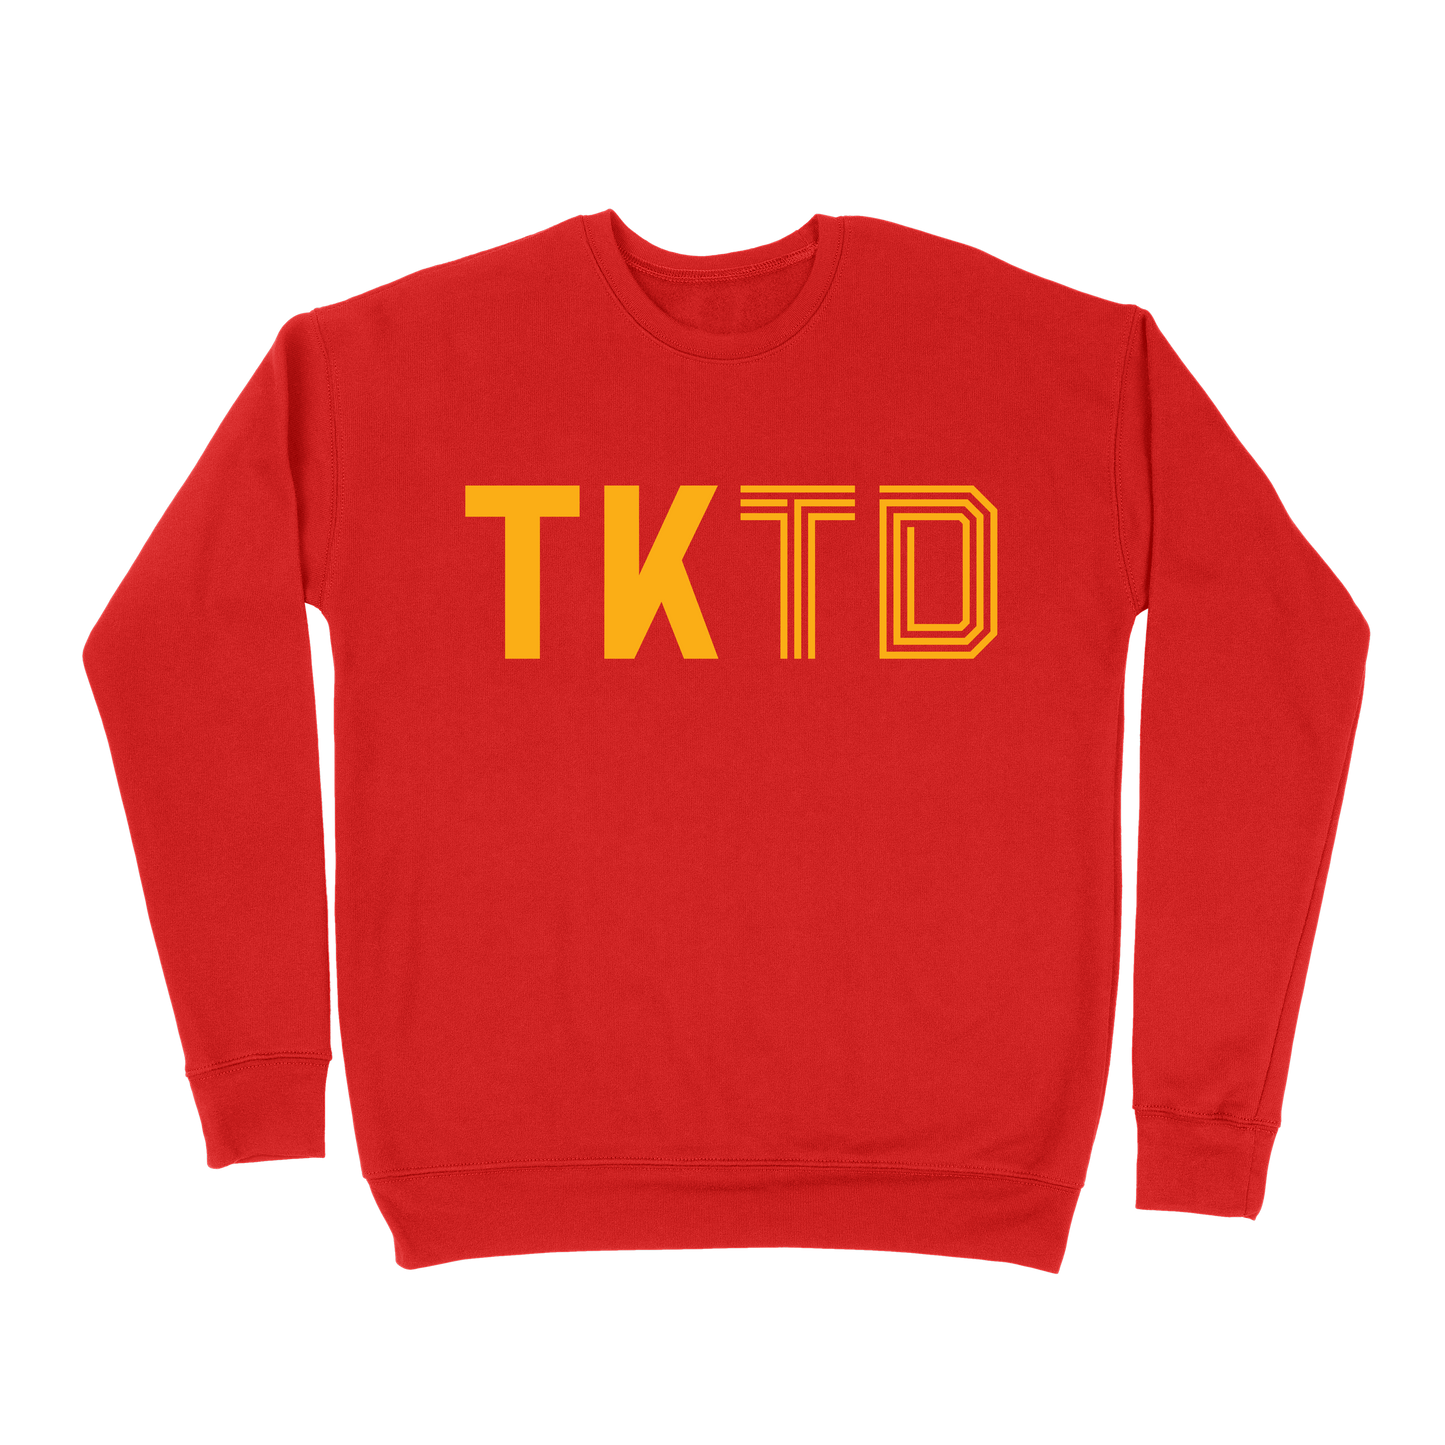 TKTD Sweatshirt - Red